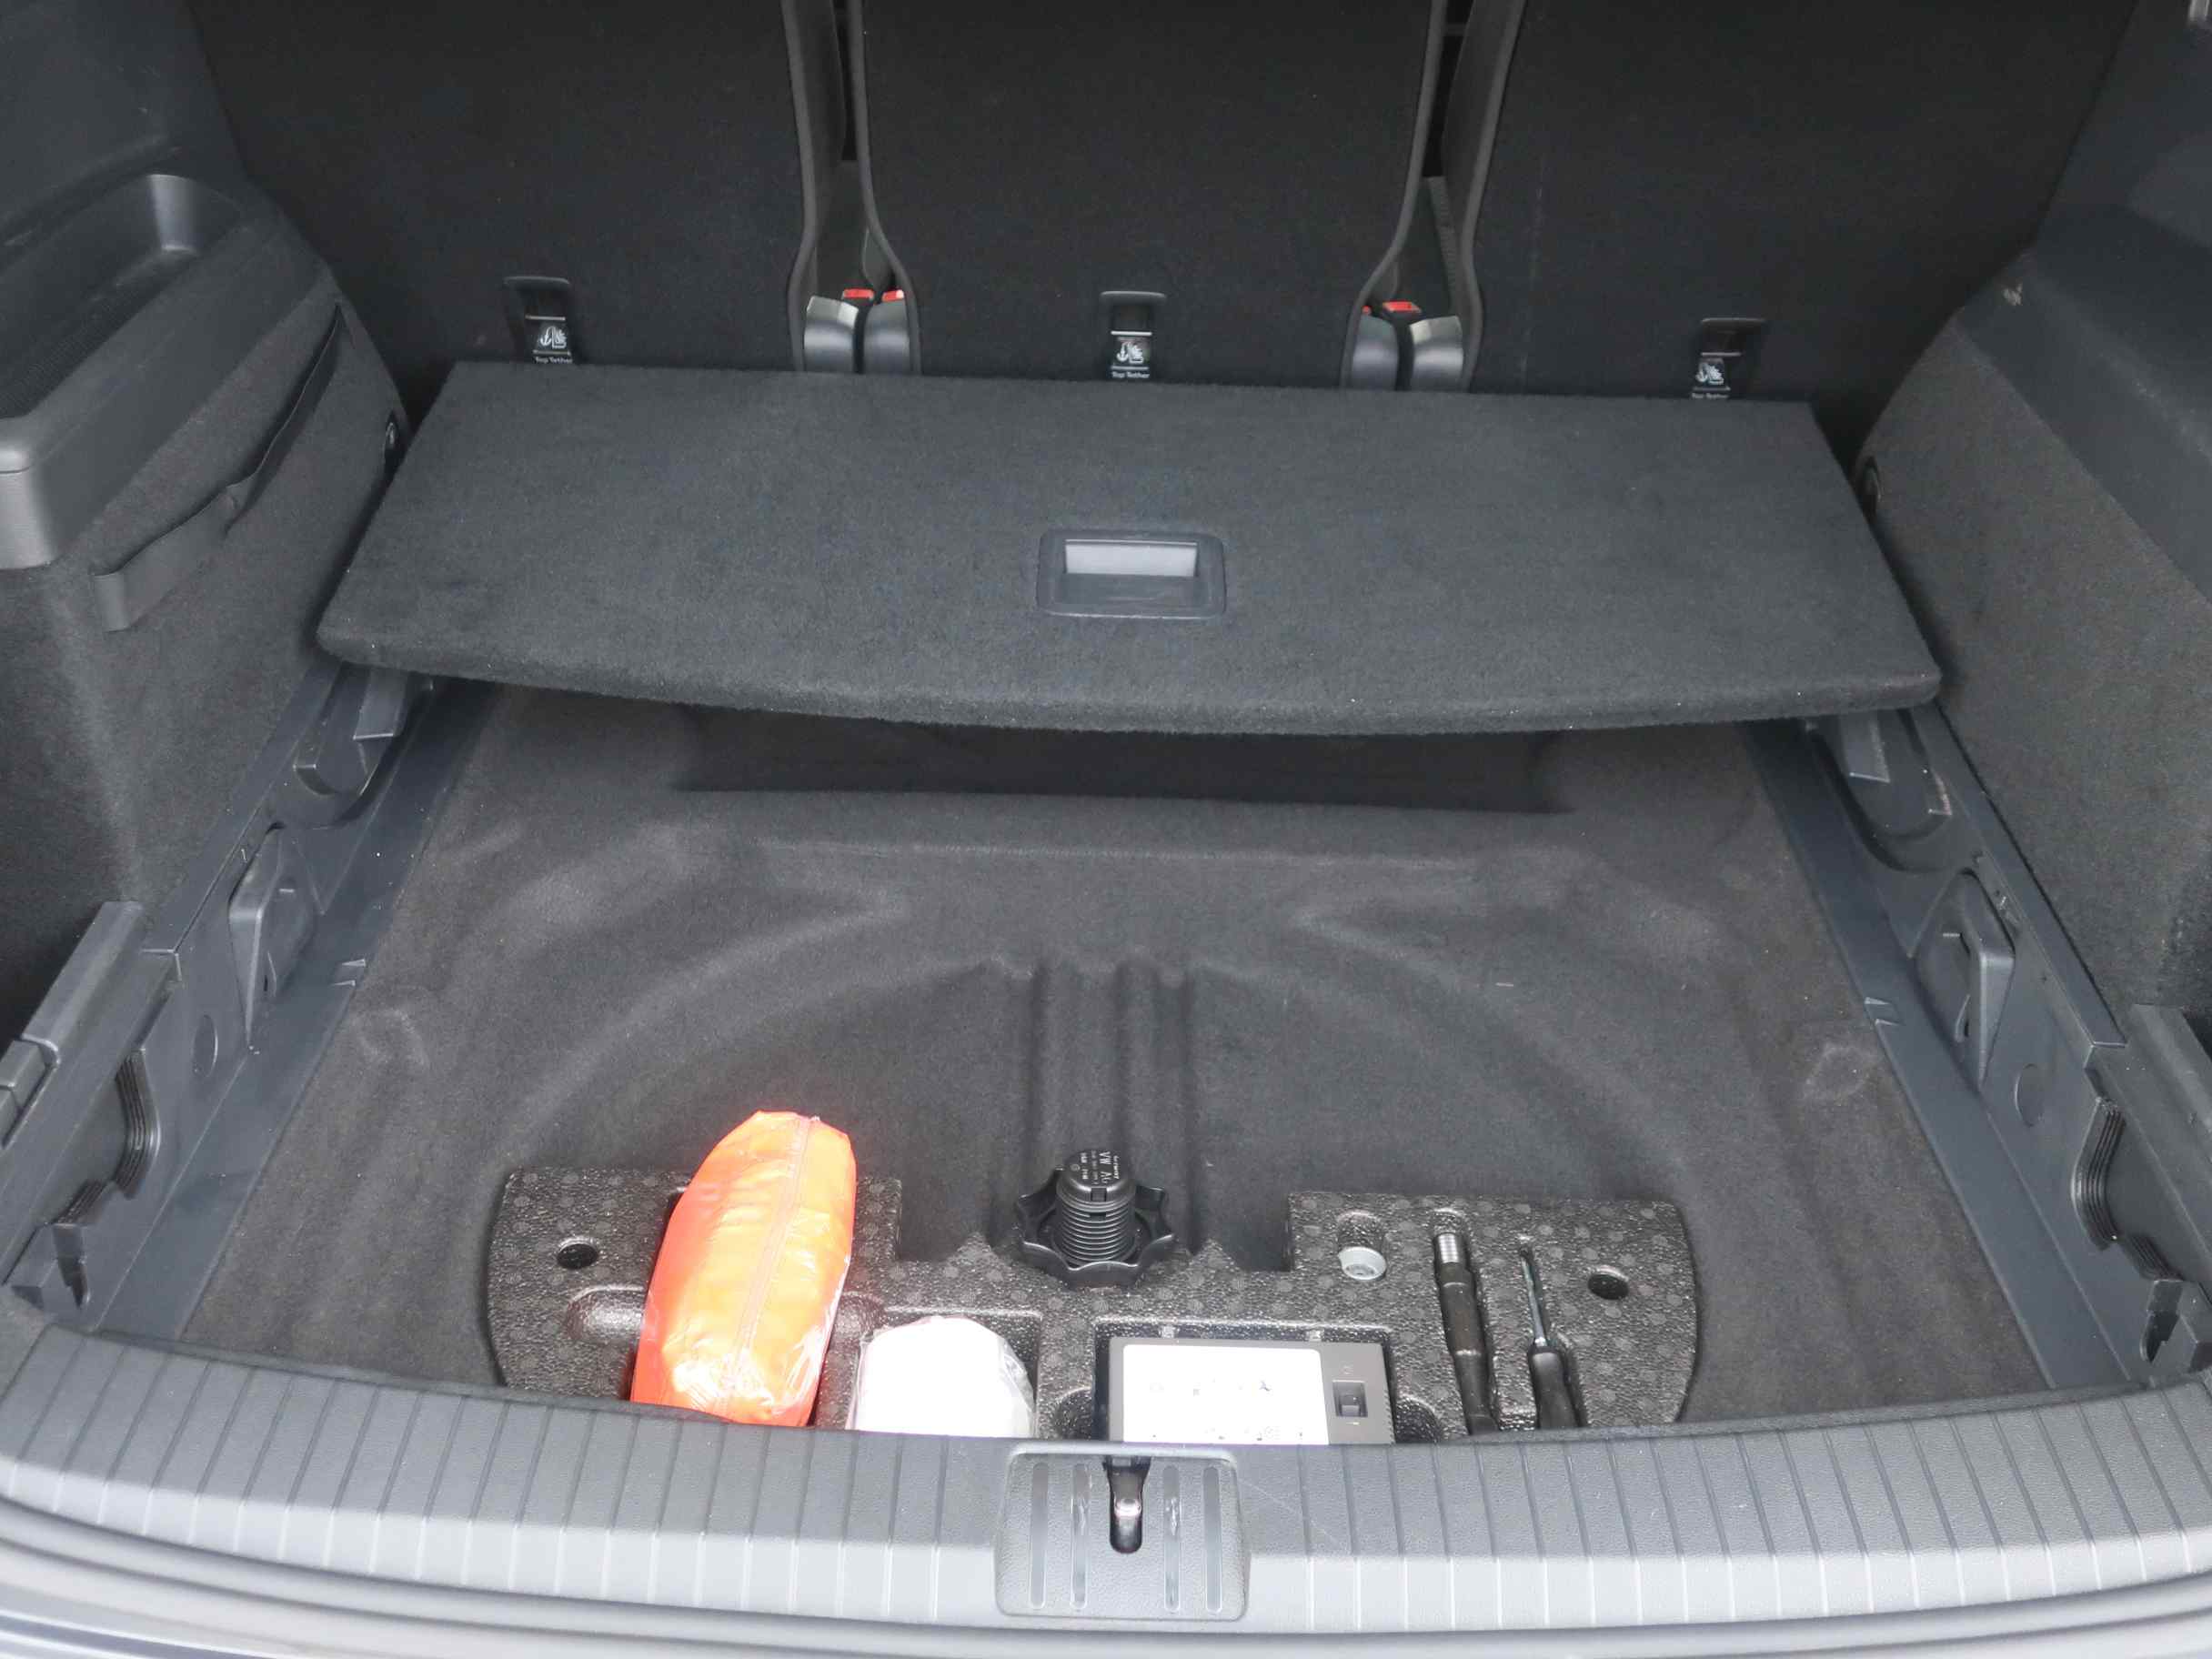 Volkswagen Touran 1.6 TDI BMT Comfortline DSG